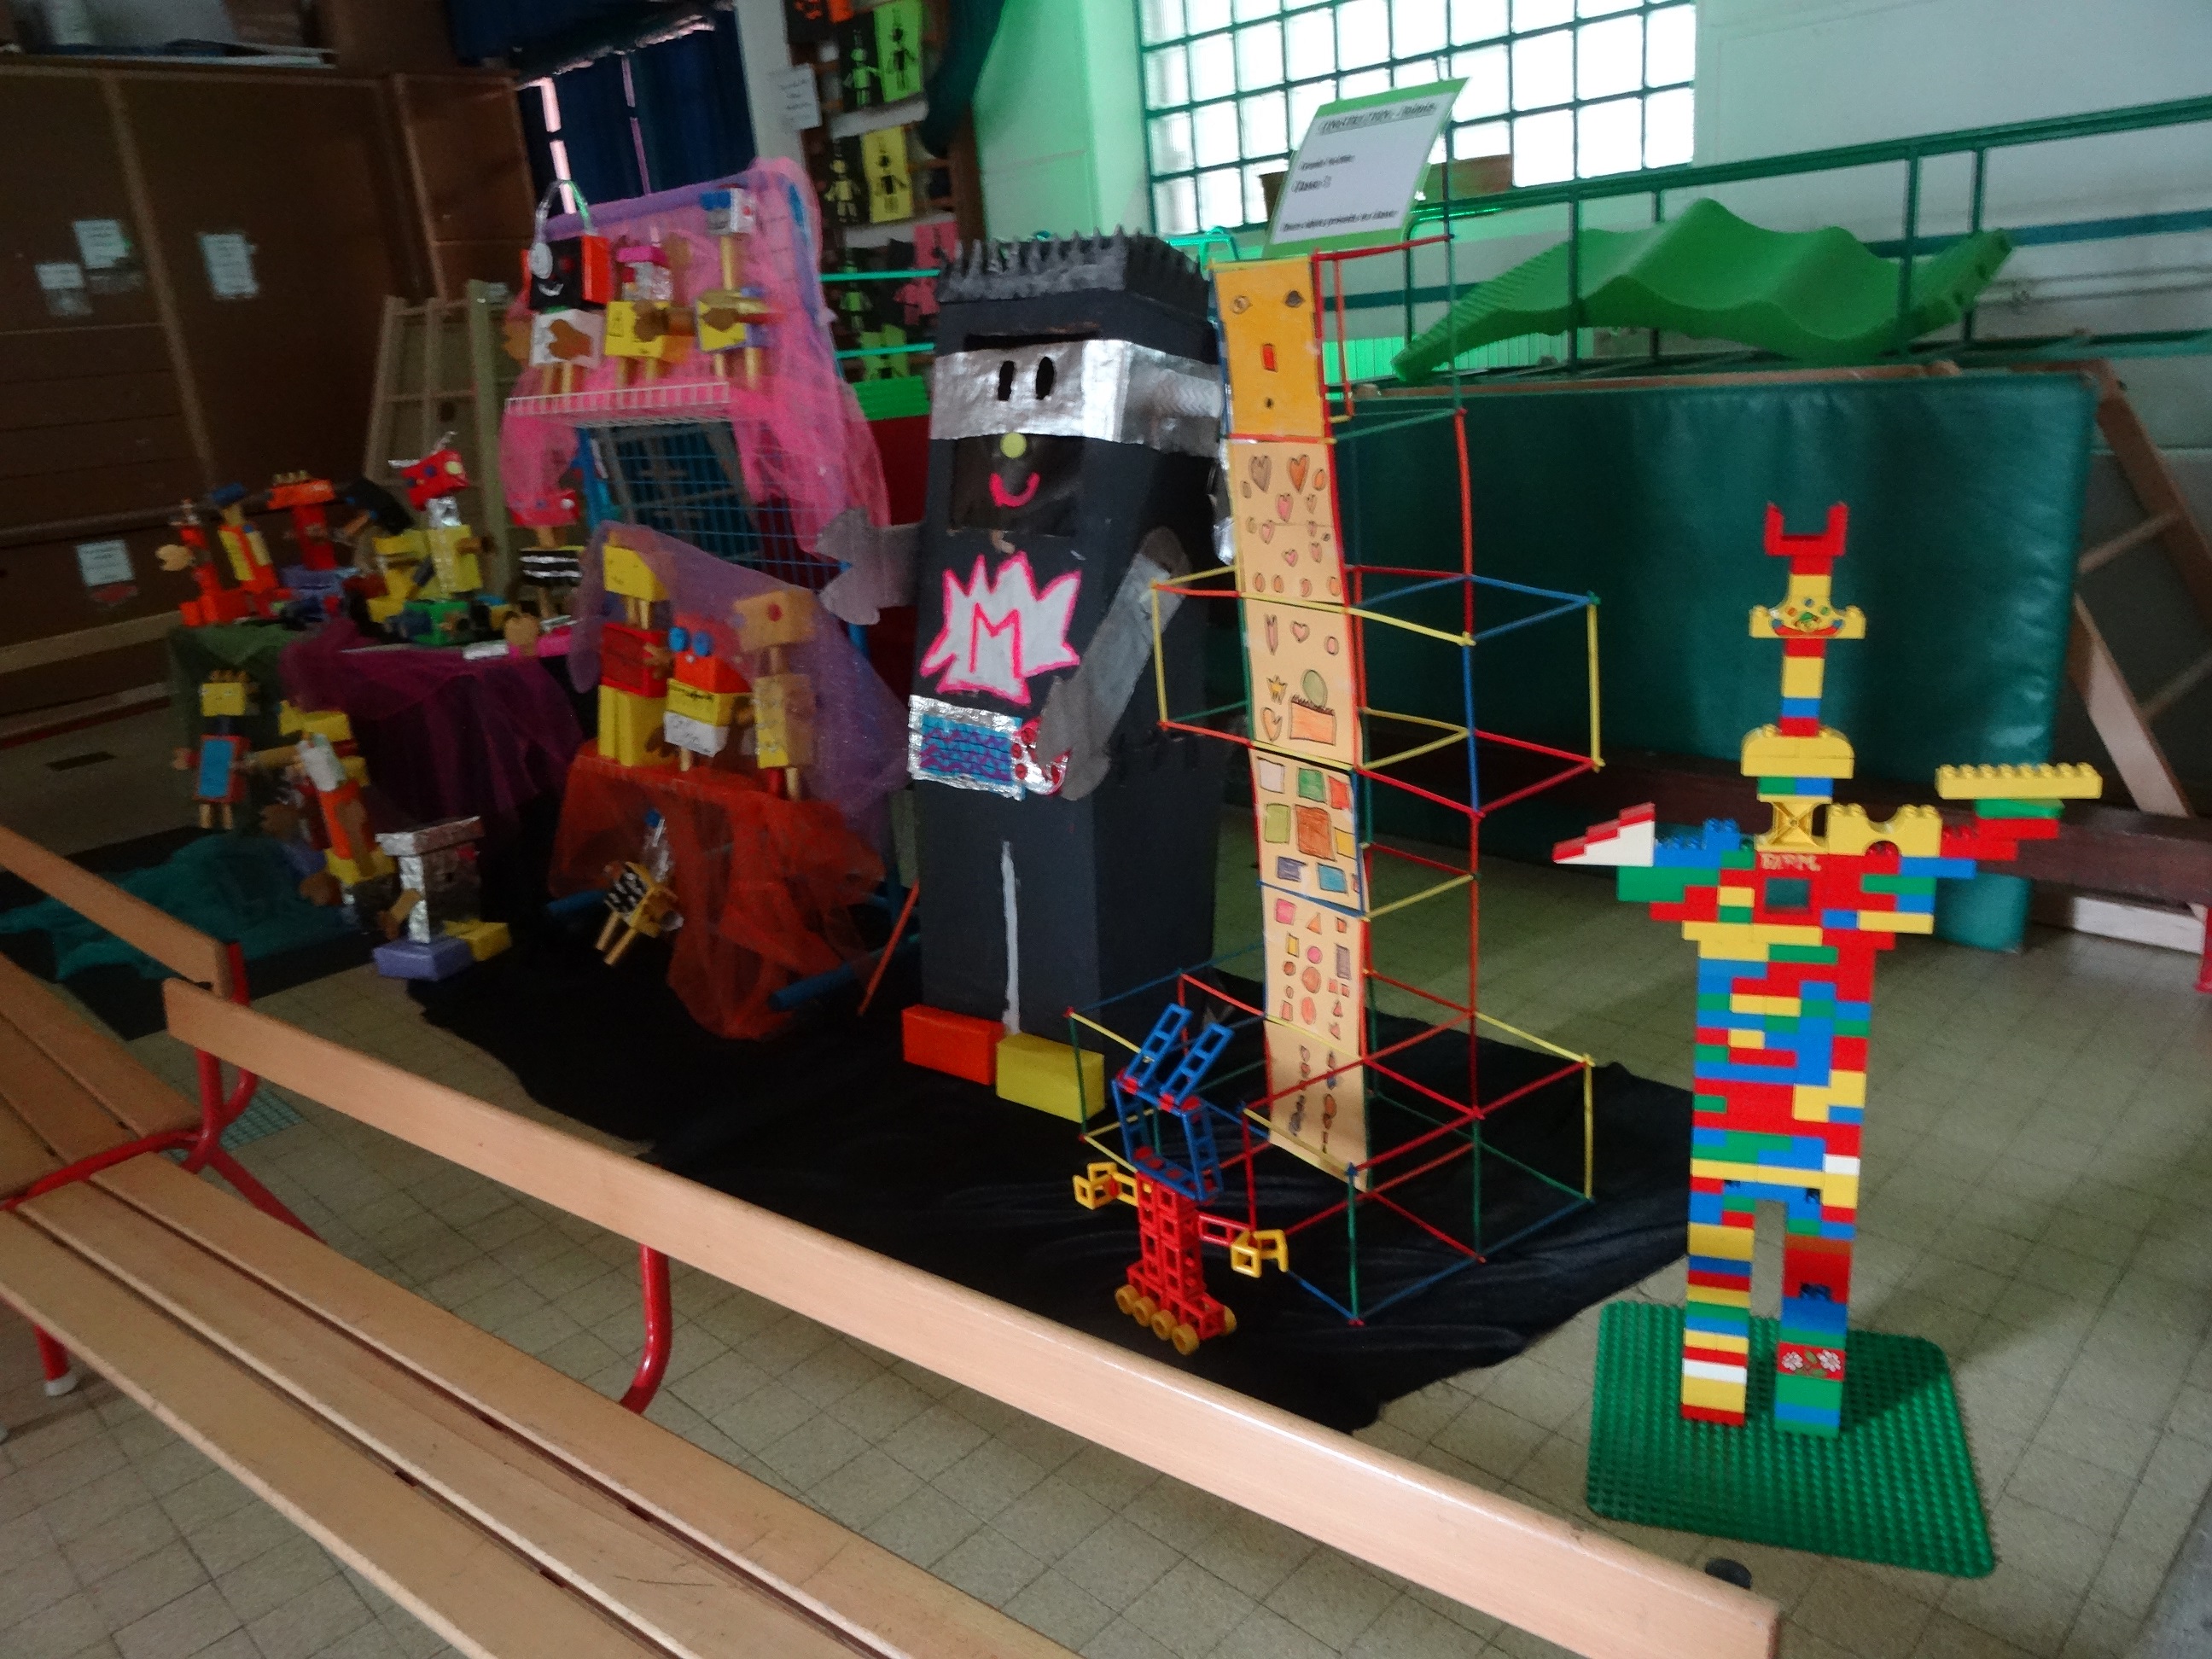 A l'occasion des portes ouvertes de l'école maternelle "Arc en ciel" rue de Tanger (18e), les familles ont découvert les travaux colorés à plat ou en volume créés par les élèves, autour de l'eouvre de Captain Fluo intitulée Robot Moulinex.